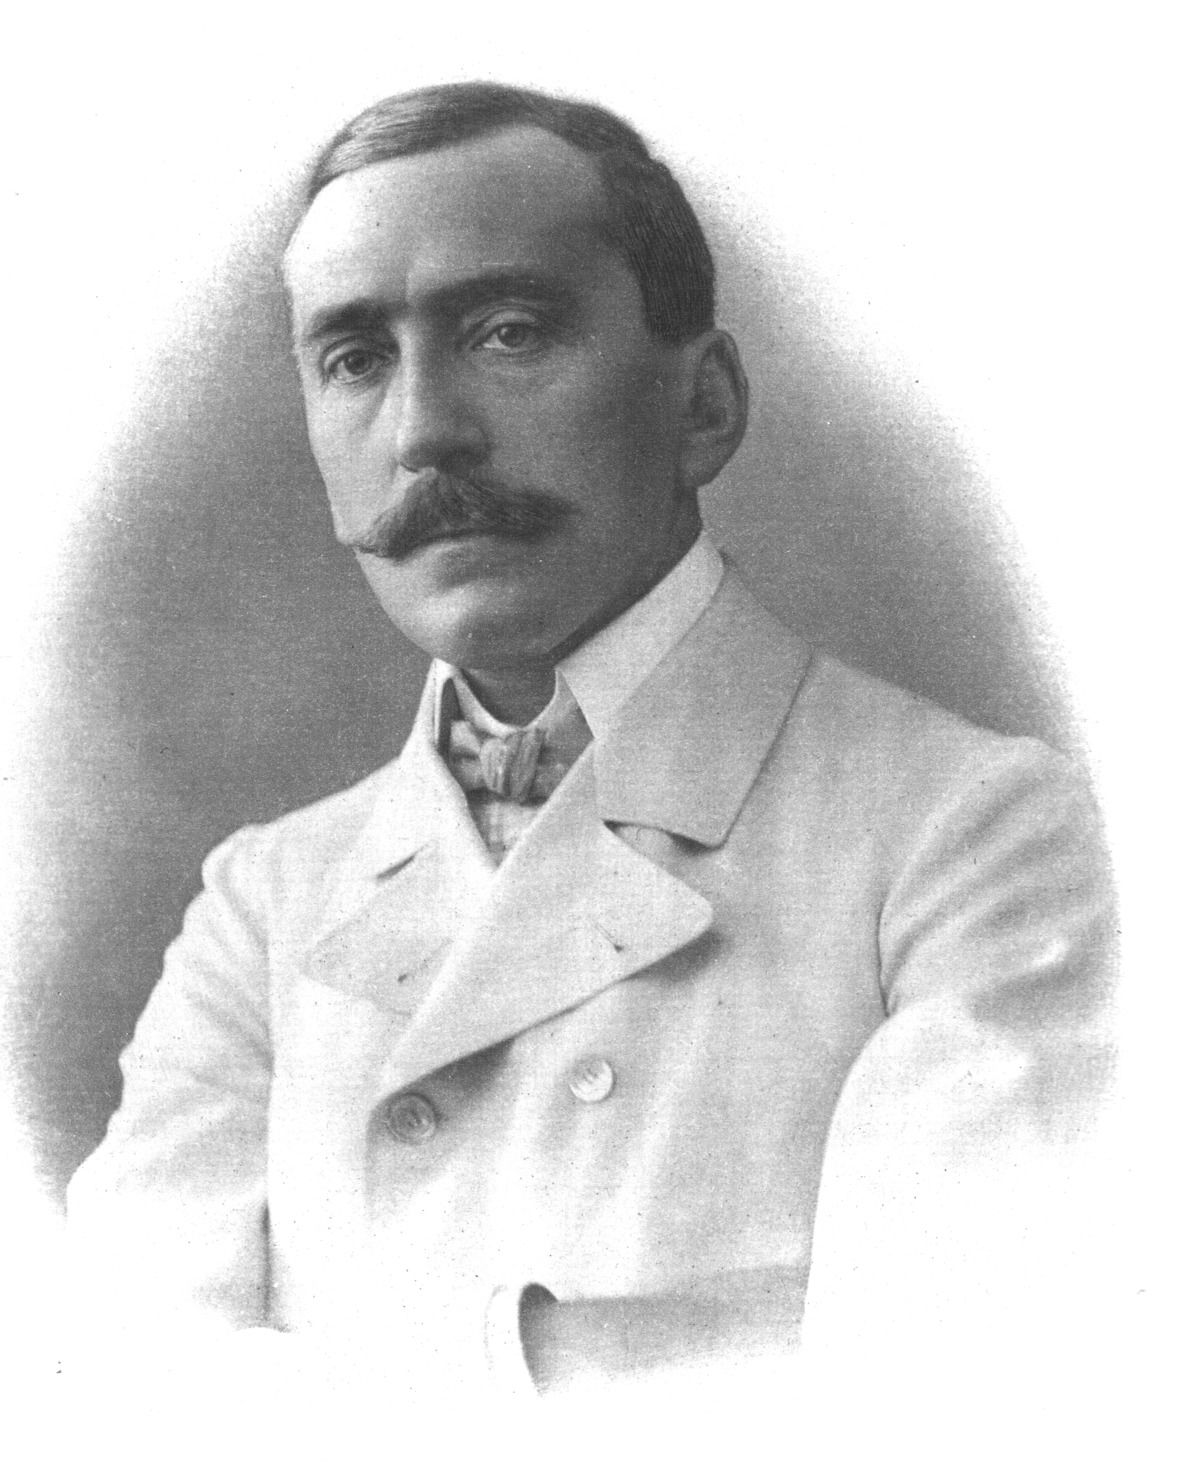 Herczeg Ferenc 1905-ben, amikor még nem írófejedelem volt, hanem csak a századforduló legszellemesebb magyar novellistája (fotó: Wikipedia)